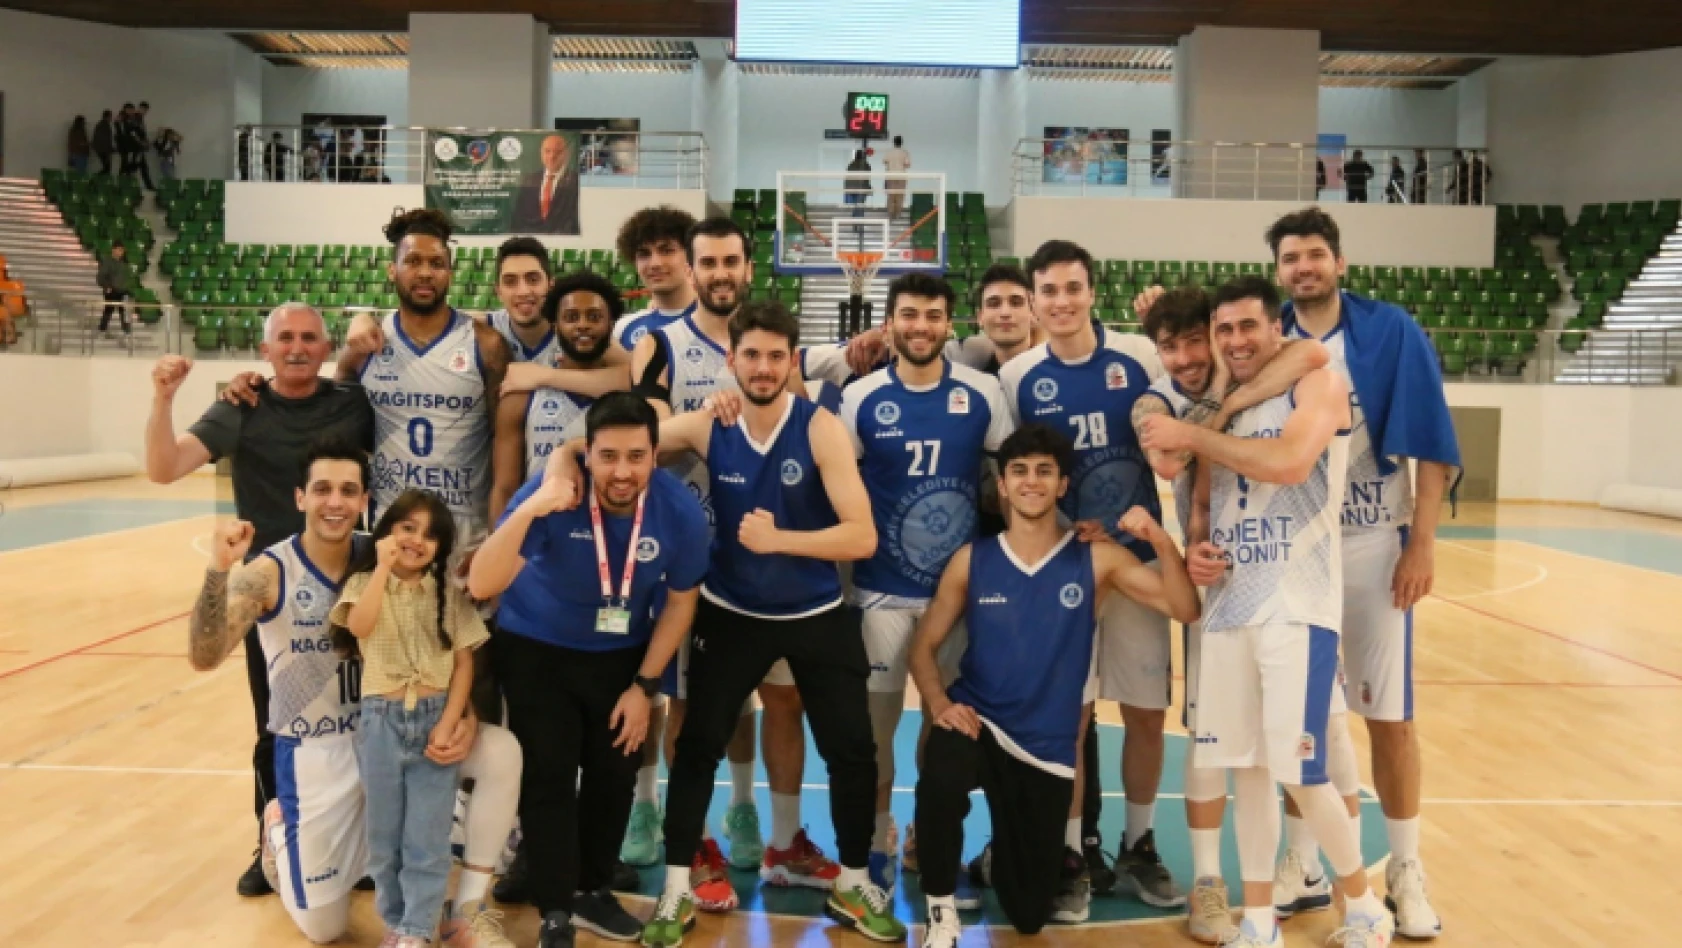 Türkiye Basketbol Ligi: Kocaeli BŞB Kağıtspor: 80 - Ankaragücü Mamak Belediyesi: 72